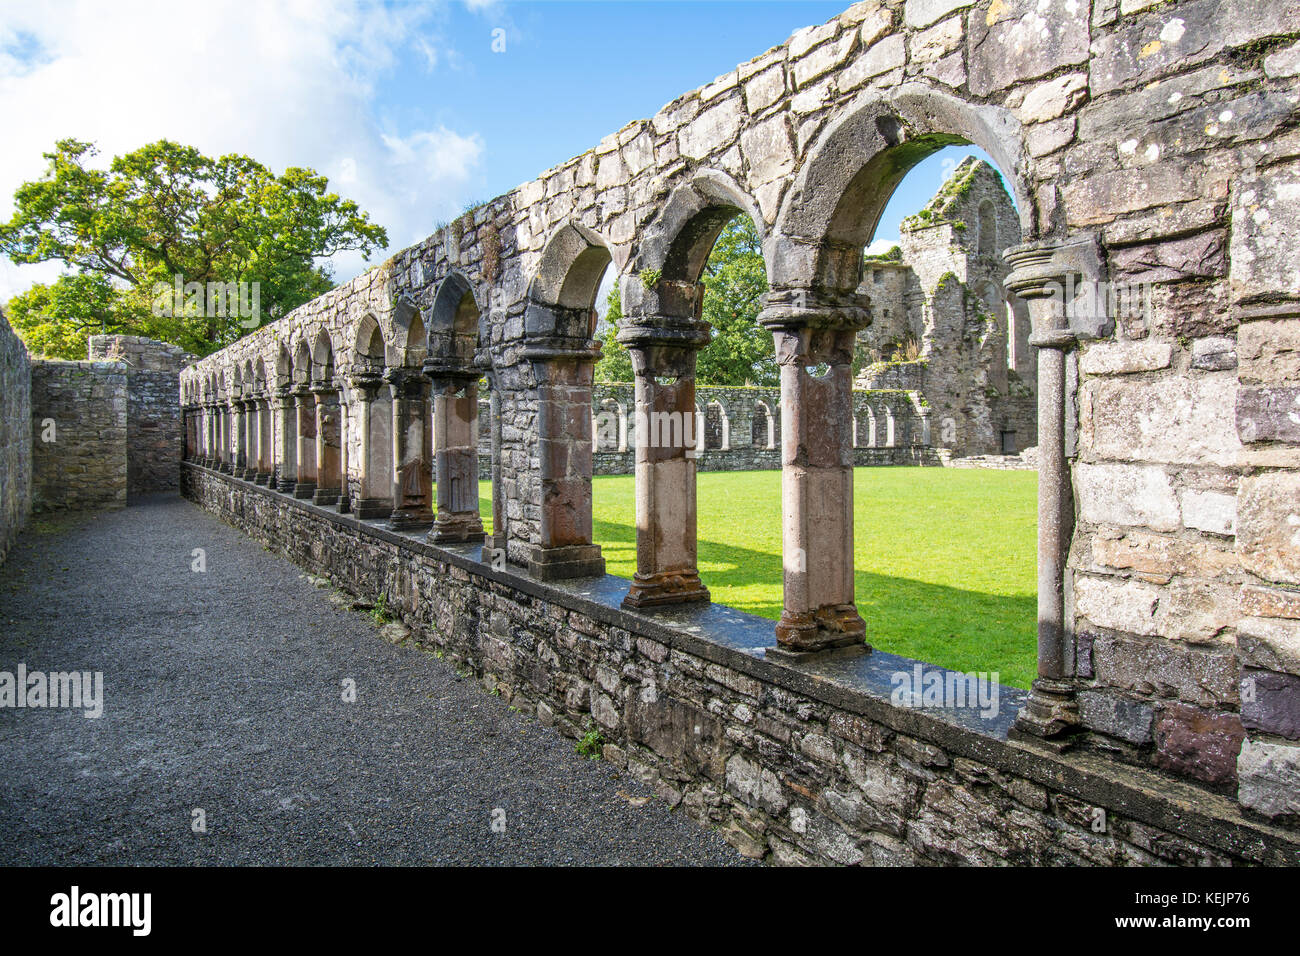 Ruines de l'abbaye de Jerpoint, Kilkenny, Irlande, une abbaye cistercienne médiévale, détruit lors de la dissolution des monastères sous Henri le huit Banque D'Images